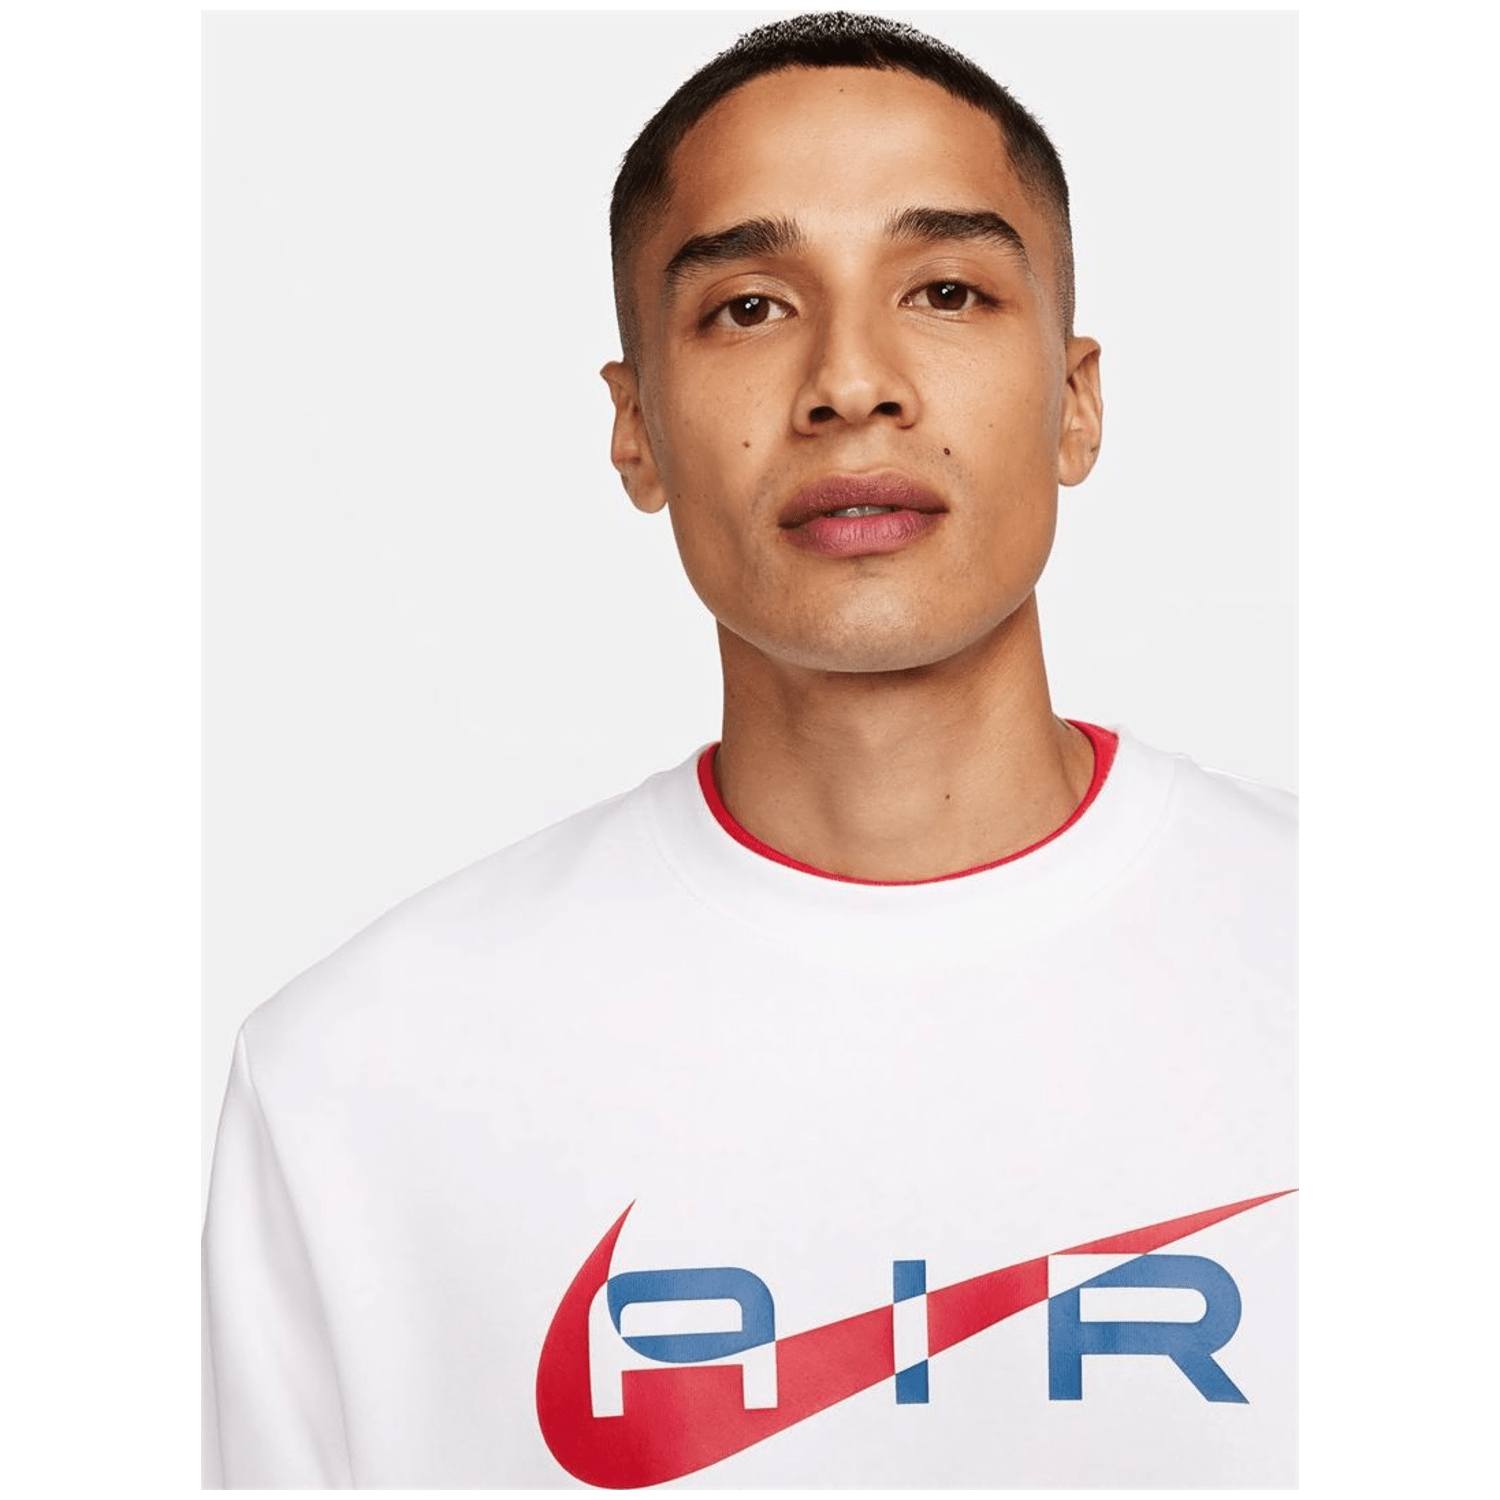 Nike Sportswear Air Crew-Neck Herren Sweatshirt